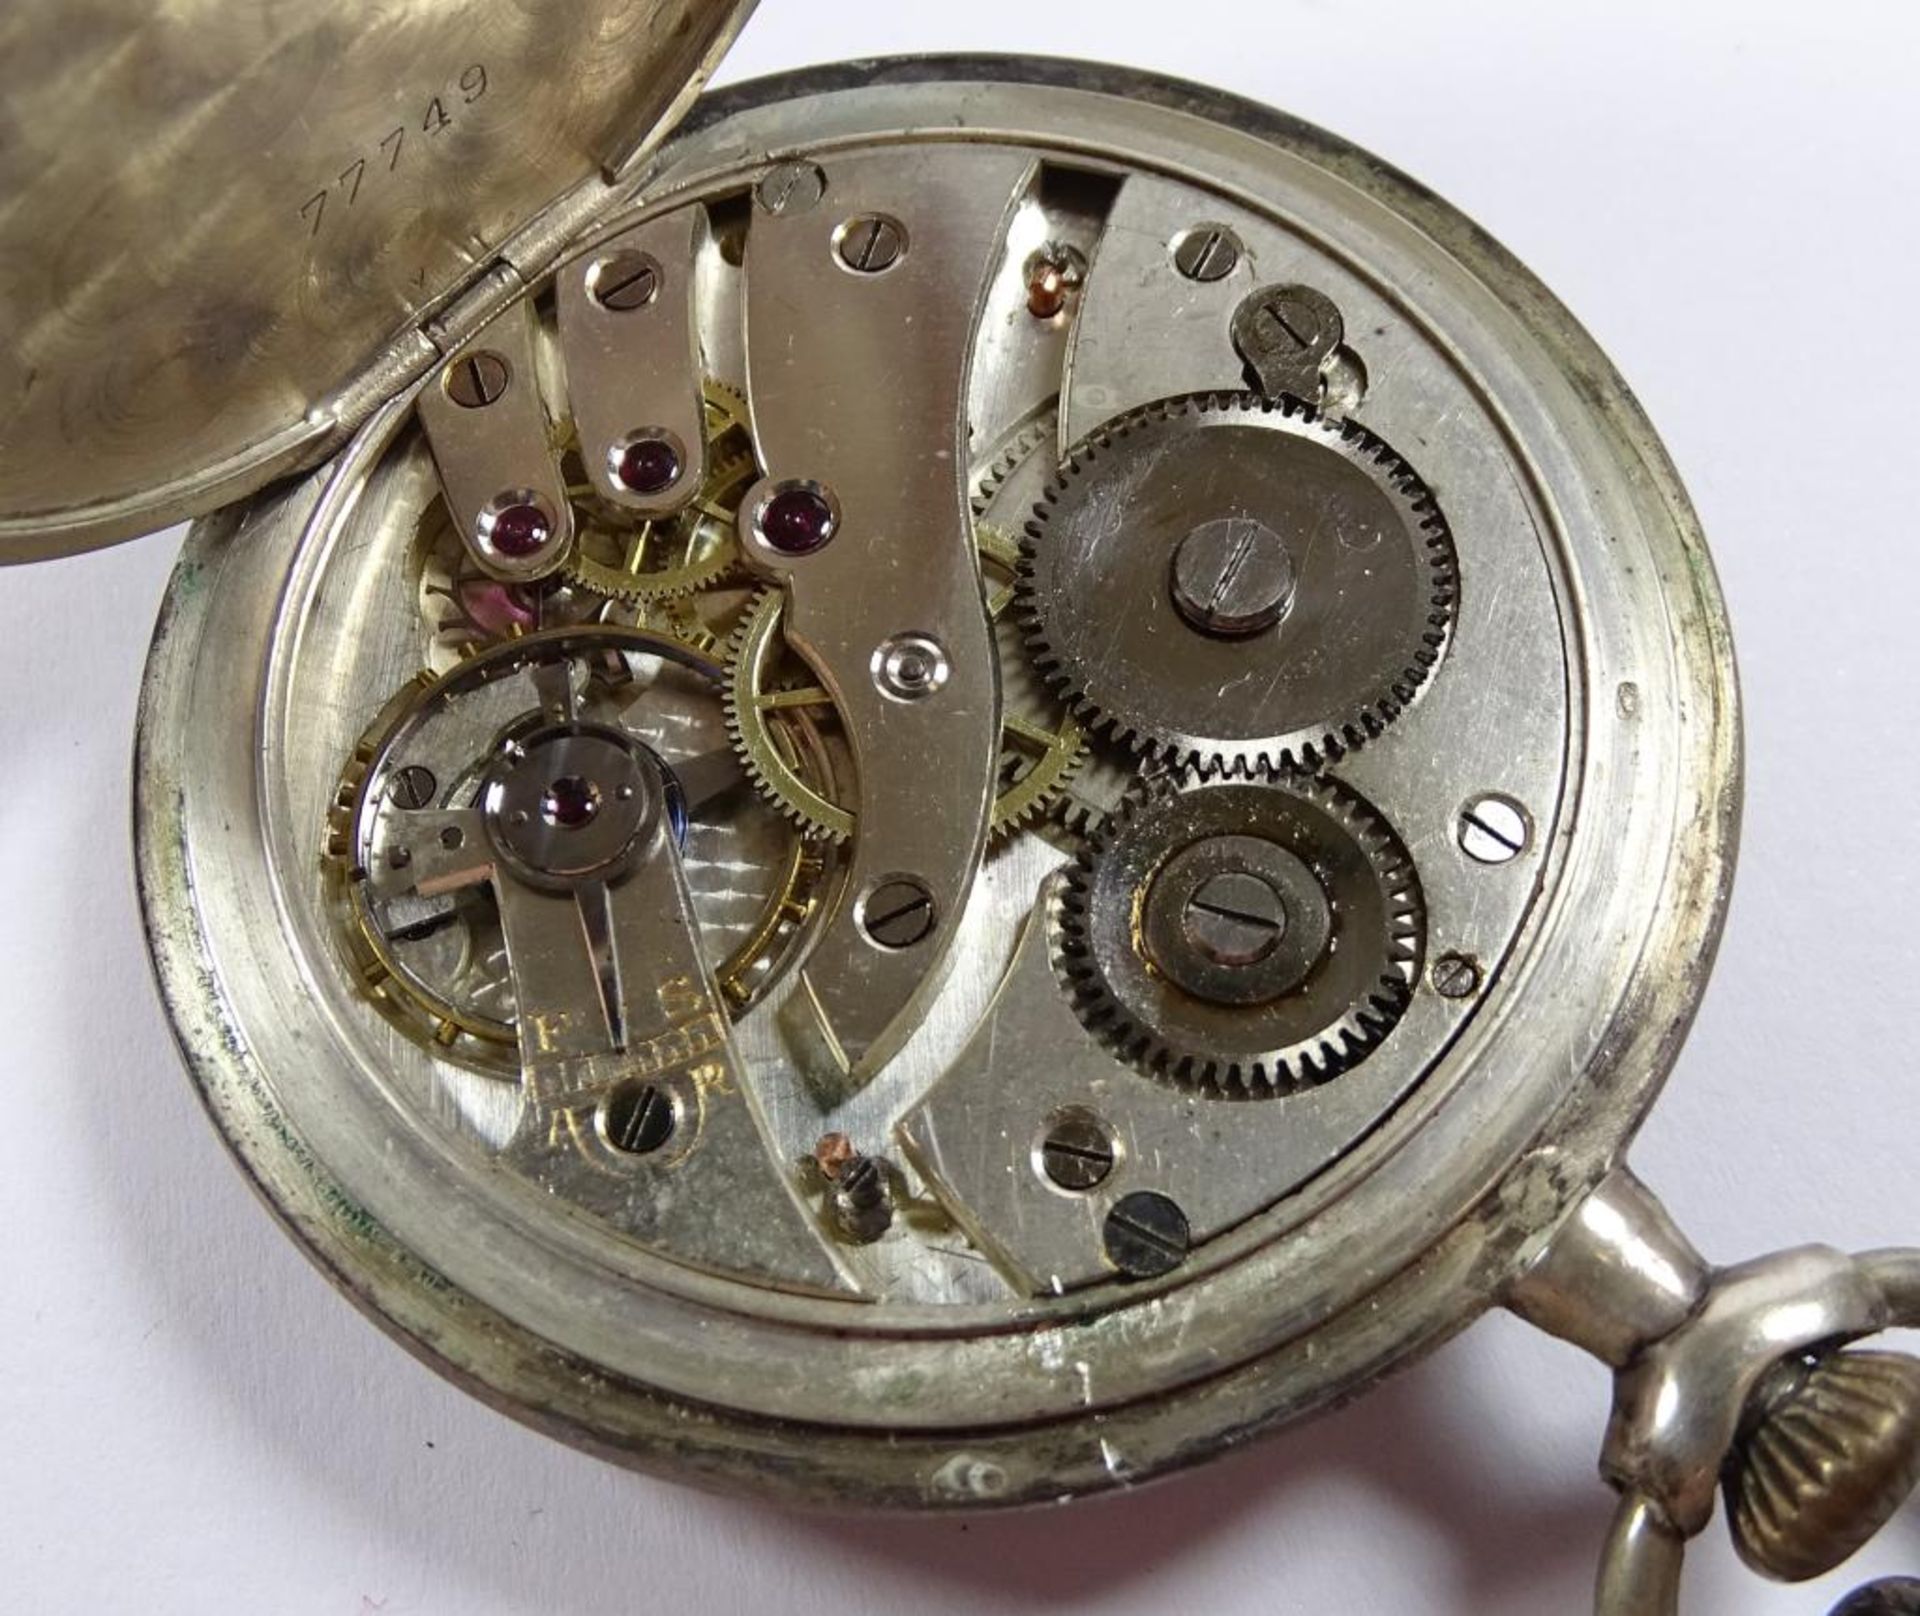 HTU Silber 800/000, Handaufzug,Werk läuft,an alter Silber Uhrenkette 800er, innen Gravur "Niga", d- - Bild 5 aus 5